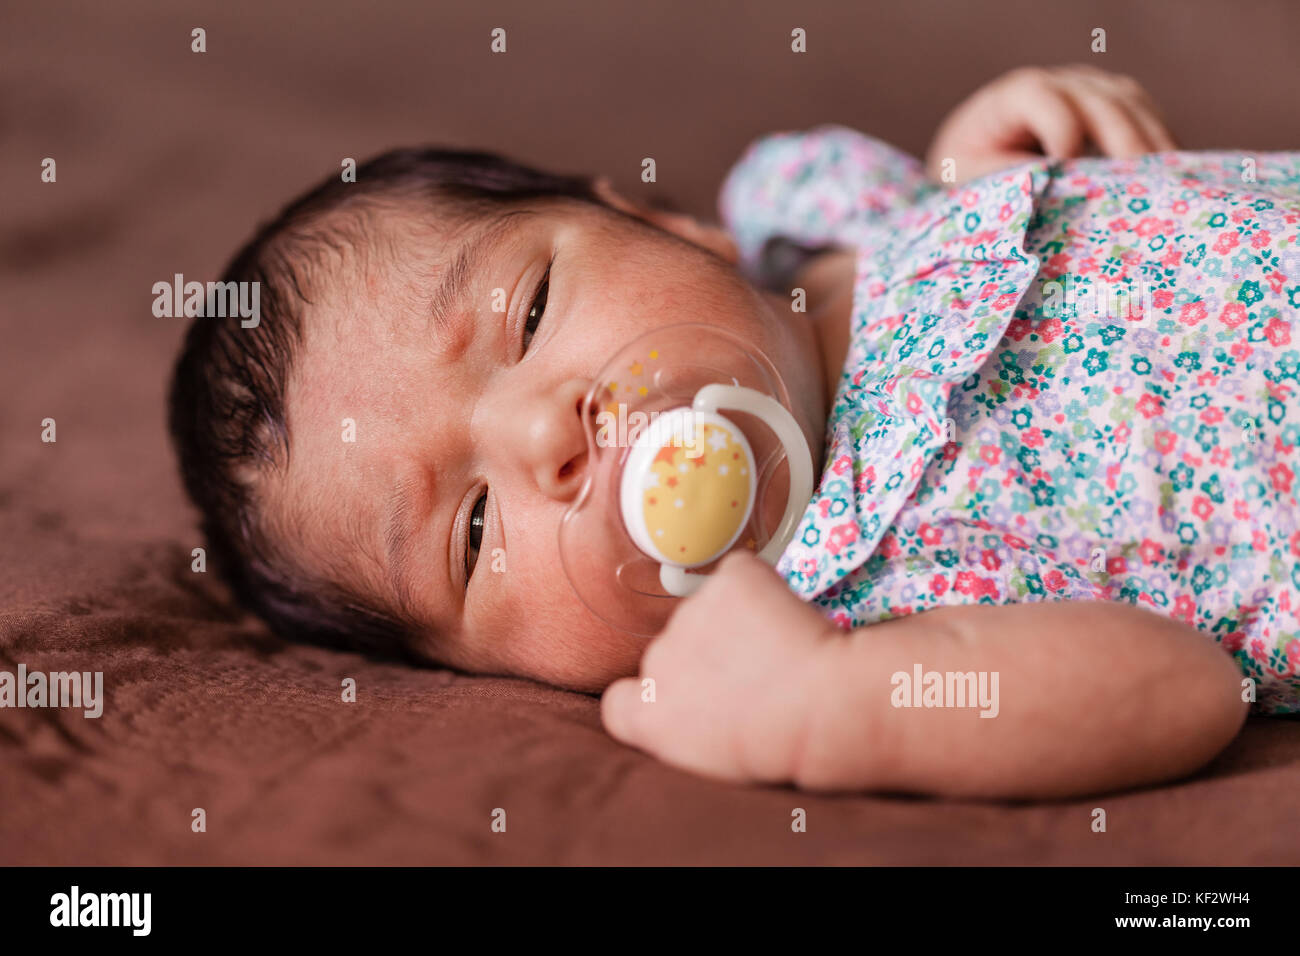 Close up portrait of a cute deux semaines Naissance bebe Fille portant une robe à fleurs avec des yeux endormis / nouveau-né portrait jolie fille somnolent somnolent Banque D'Images